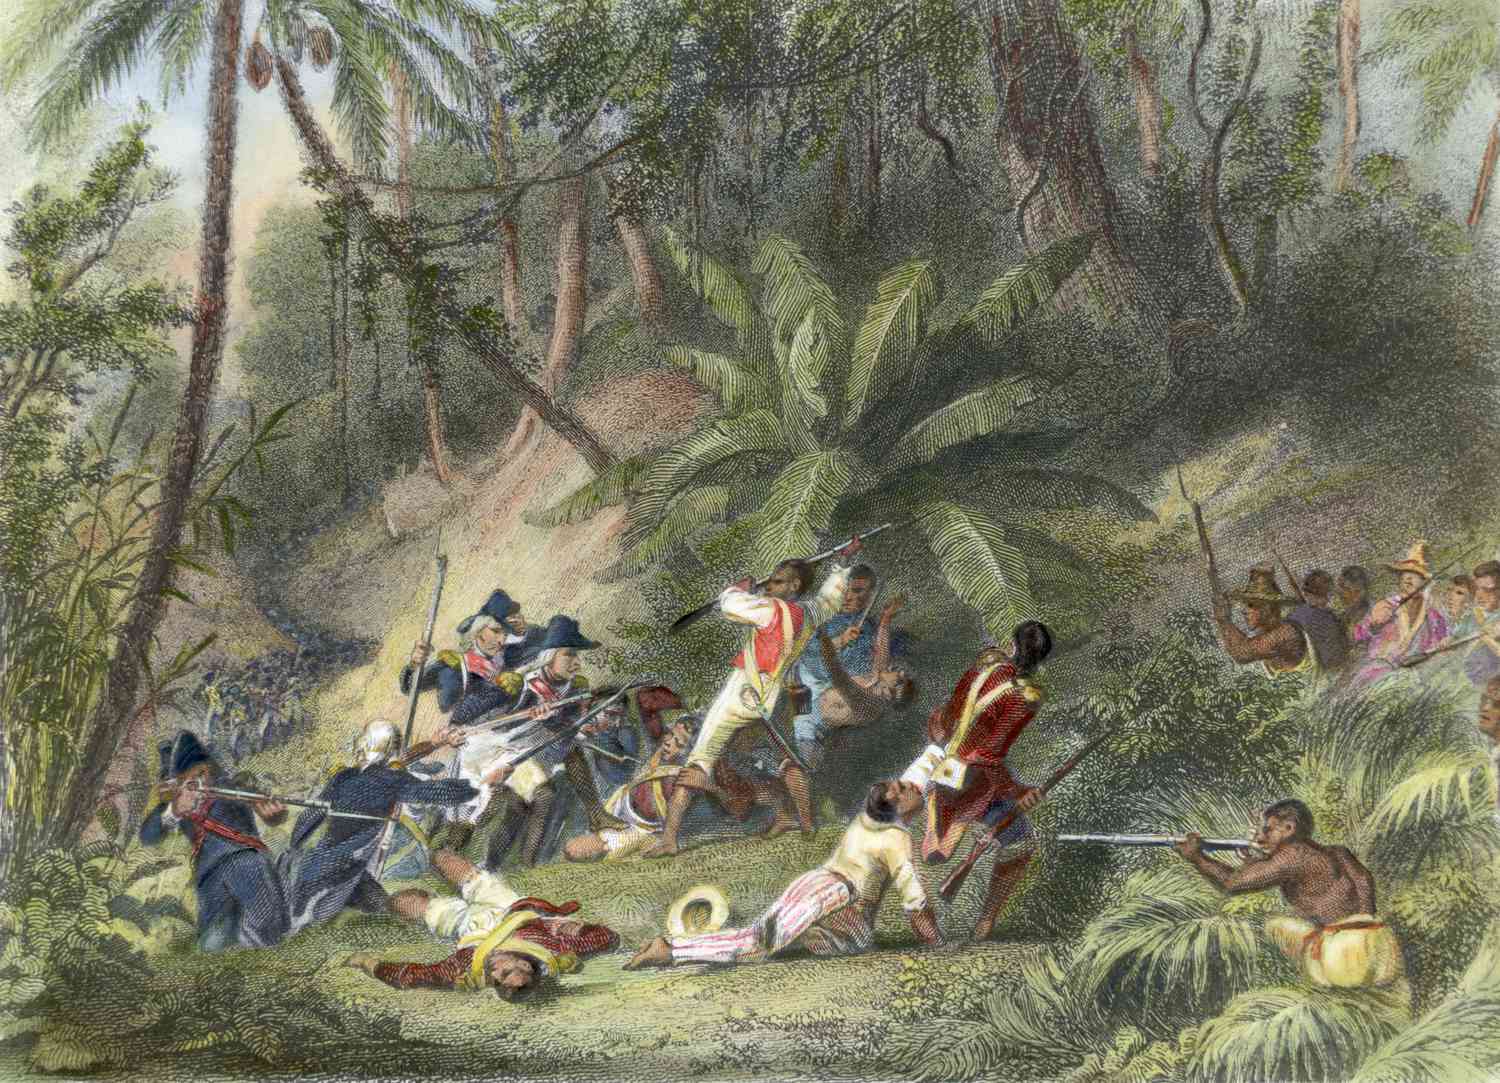 Nô lệ nổi dậy chống lại thực dân Pháp ở Haiti.